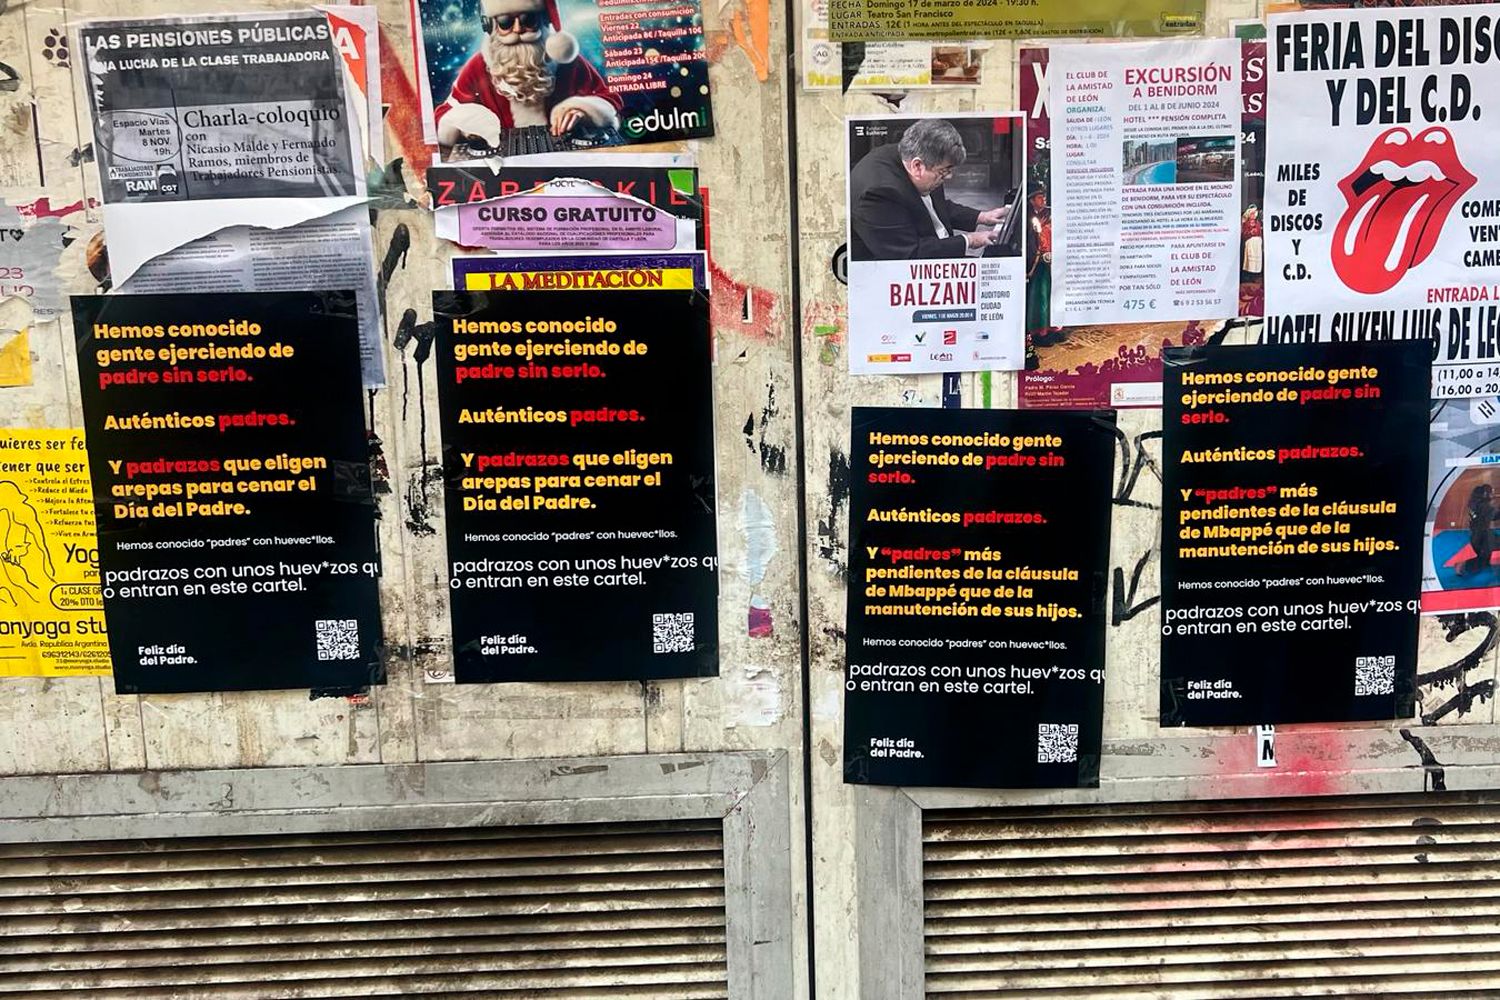 "Mbappé ha sido visto en León y celebrará el Día del Padre en León": La curiosa campaña publicitaria de Arepa Lovers